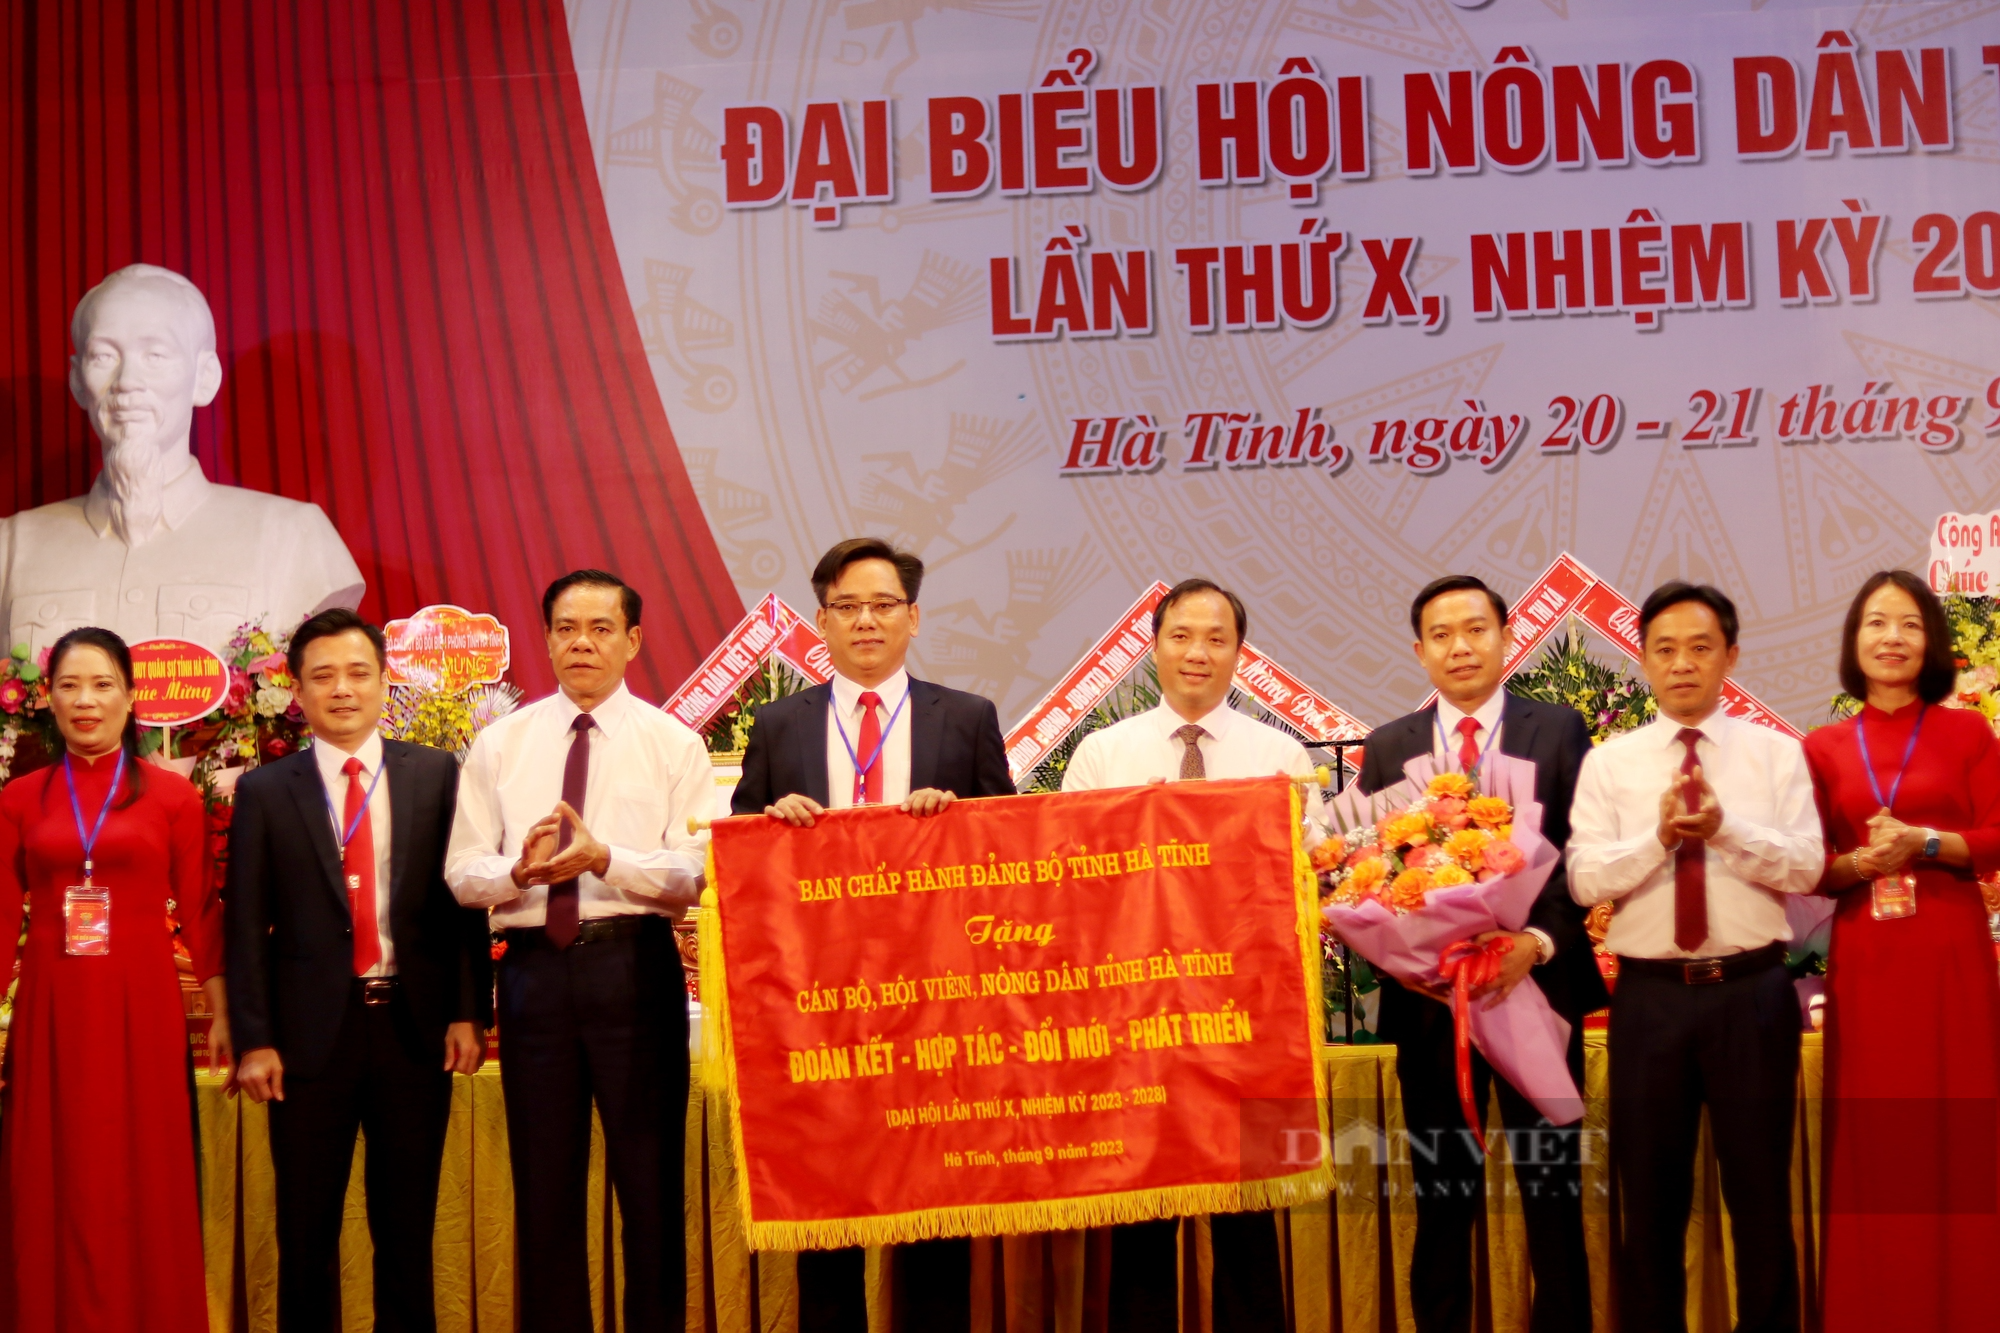 Phó Chủ tịch Hội NDVN và Bí thư Thường trực Tỉnh ủy Hà Tĩnh dự, chỉ đạo Đại hội Hội Nông dân tỉnh - Ảnh 12.